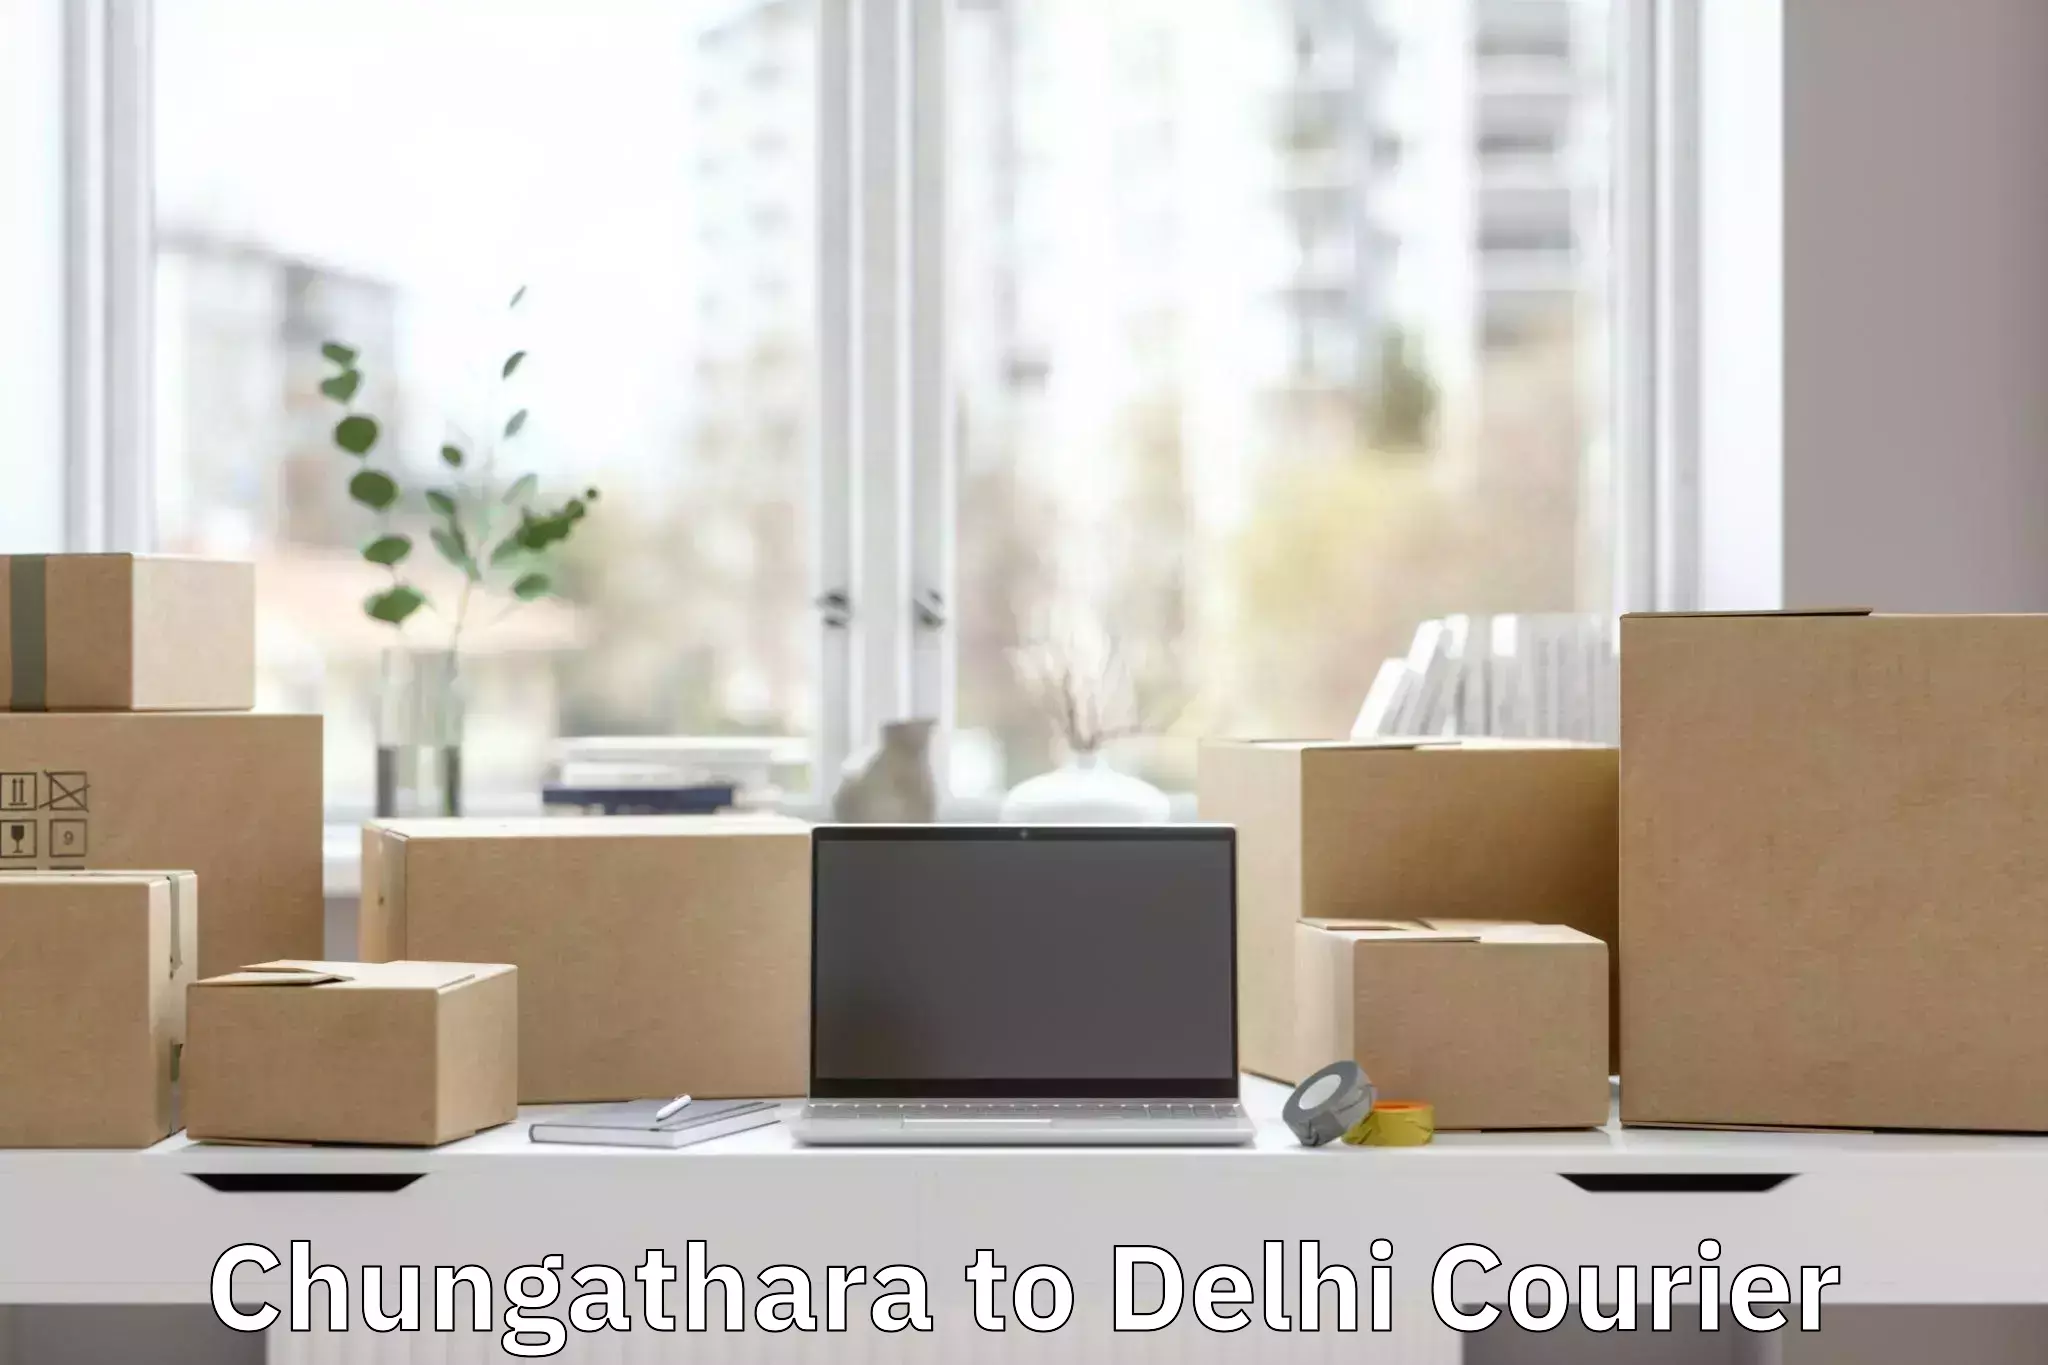 Baggage shipping rates calculator Chungathara to East Delhi